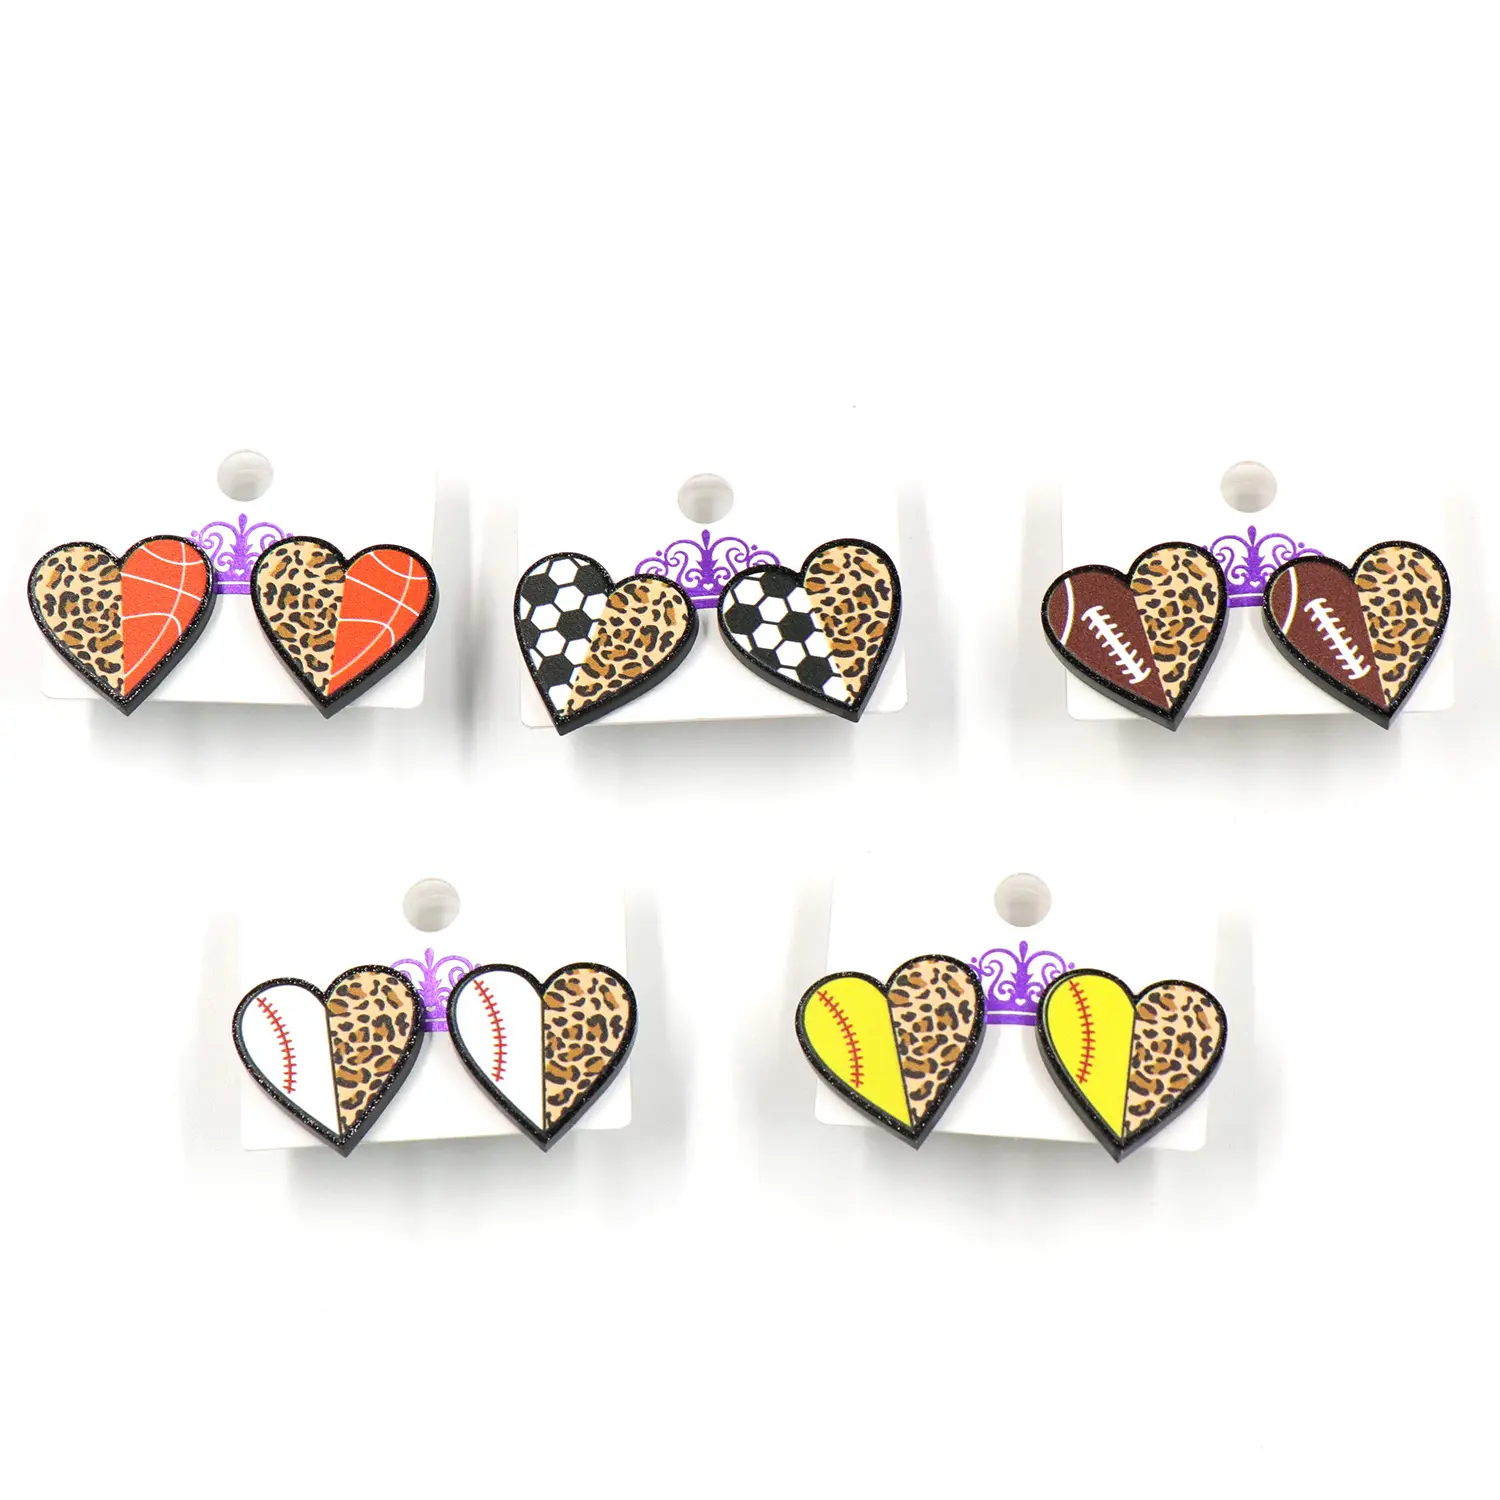 Sporty Earrings Acrylic Earrings Statement Baseball Softball Leopard Print Pattern Heart Shaped Acrylic Stud Earrings